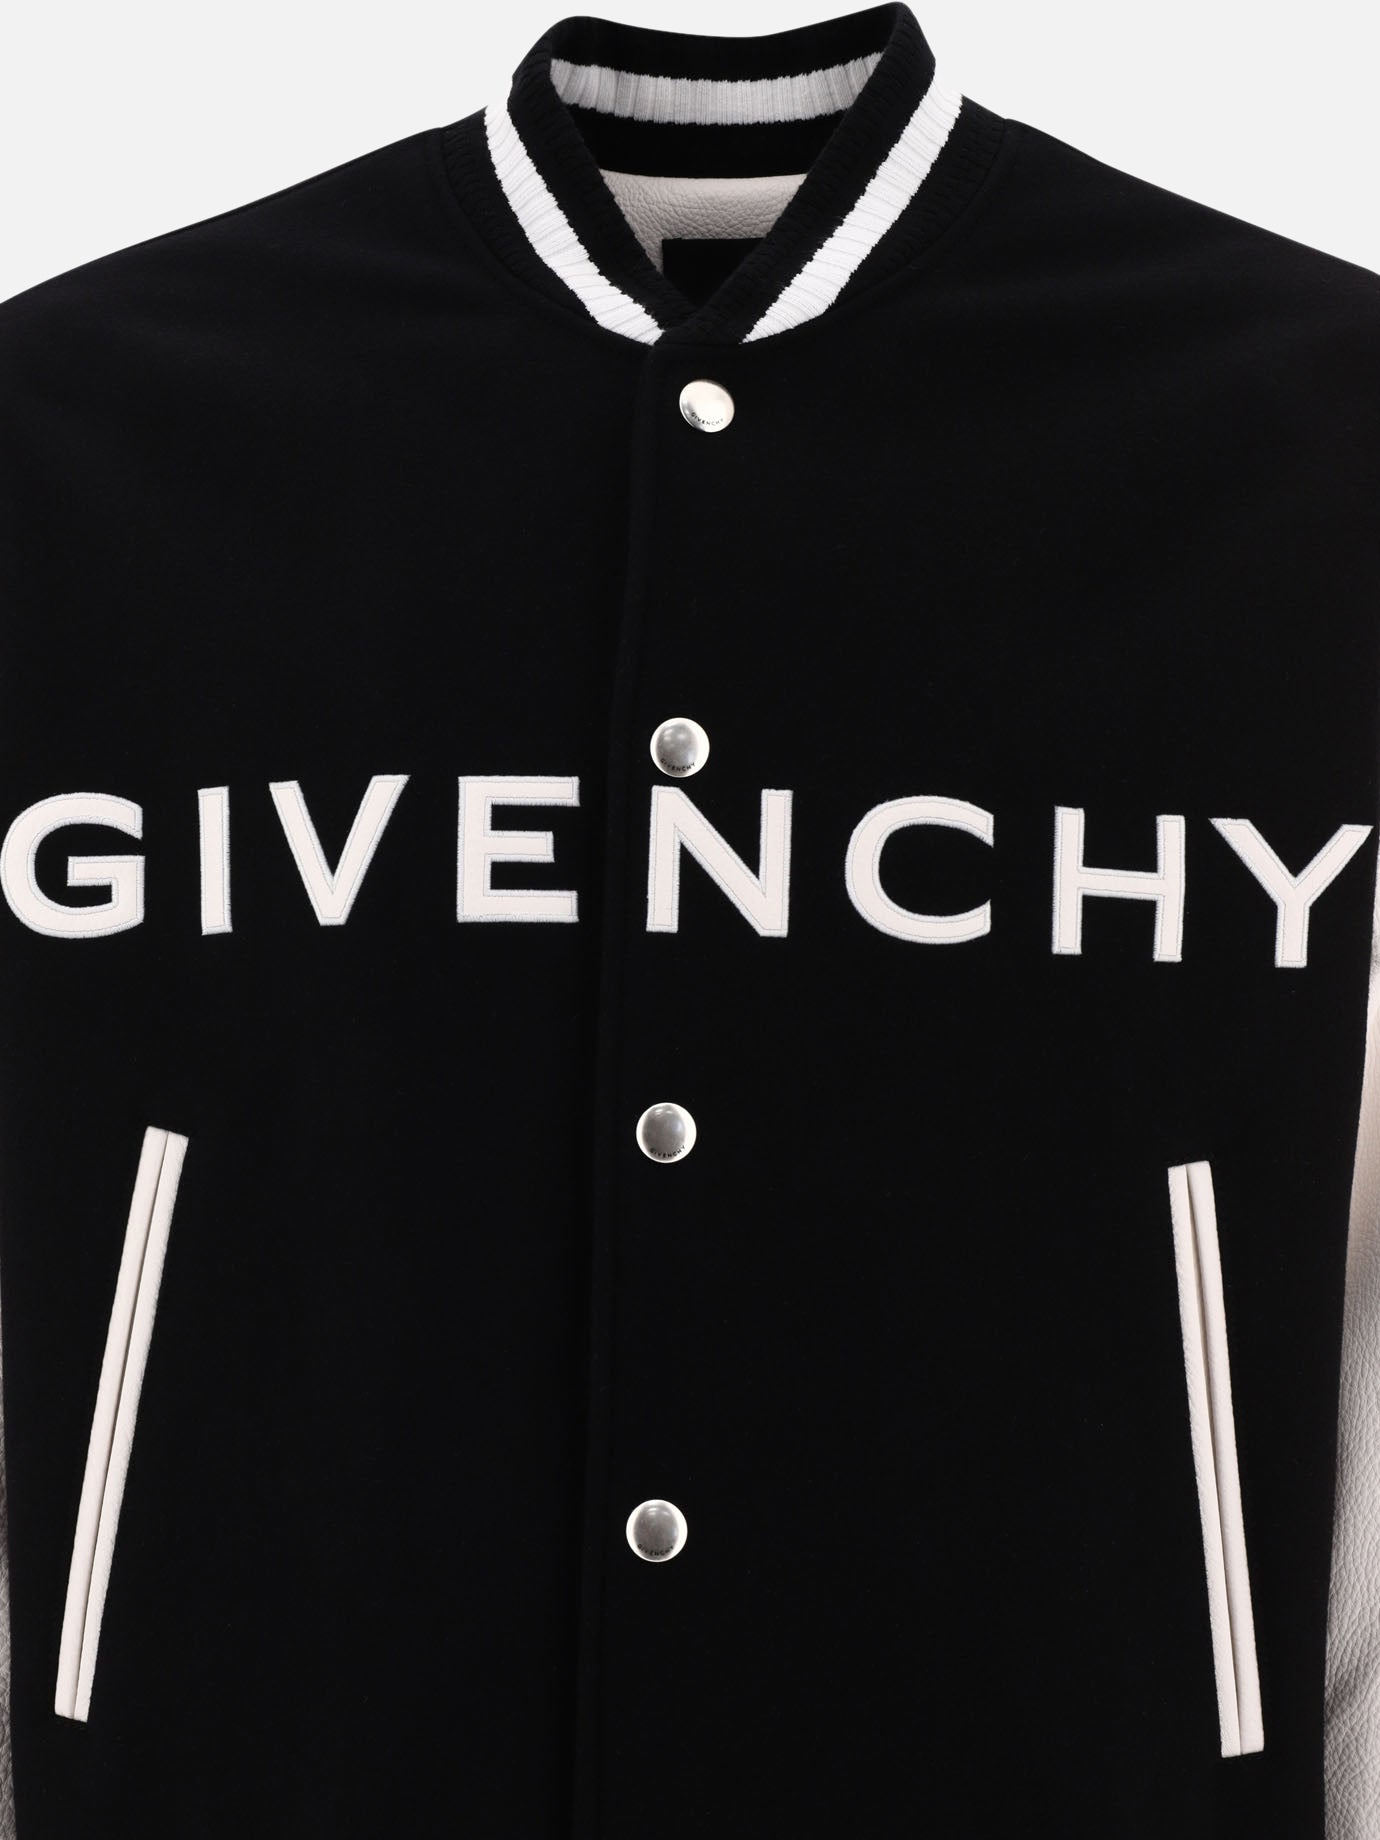 "GIVENCHY" varsity jacket